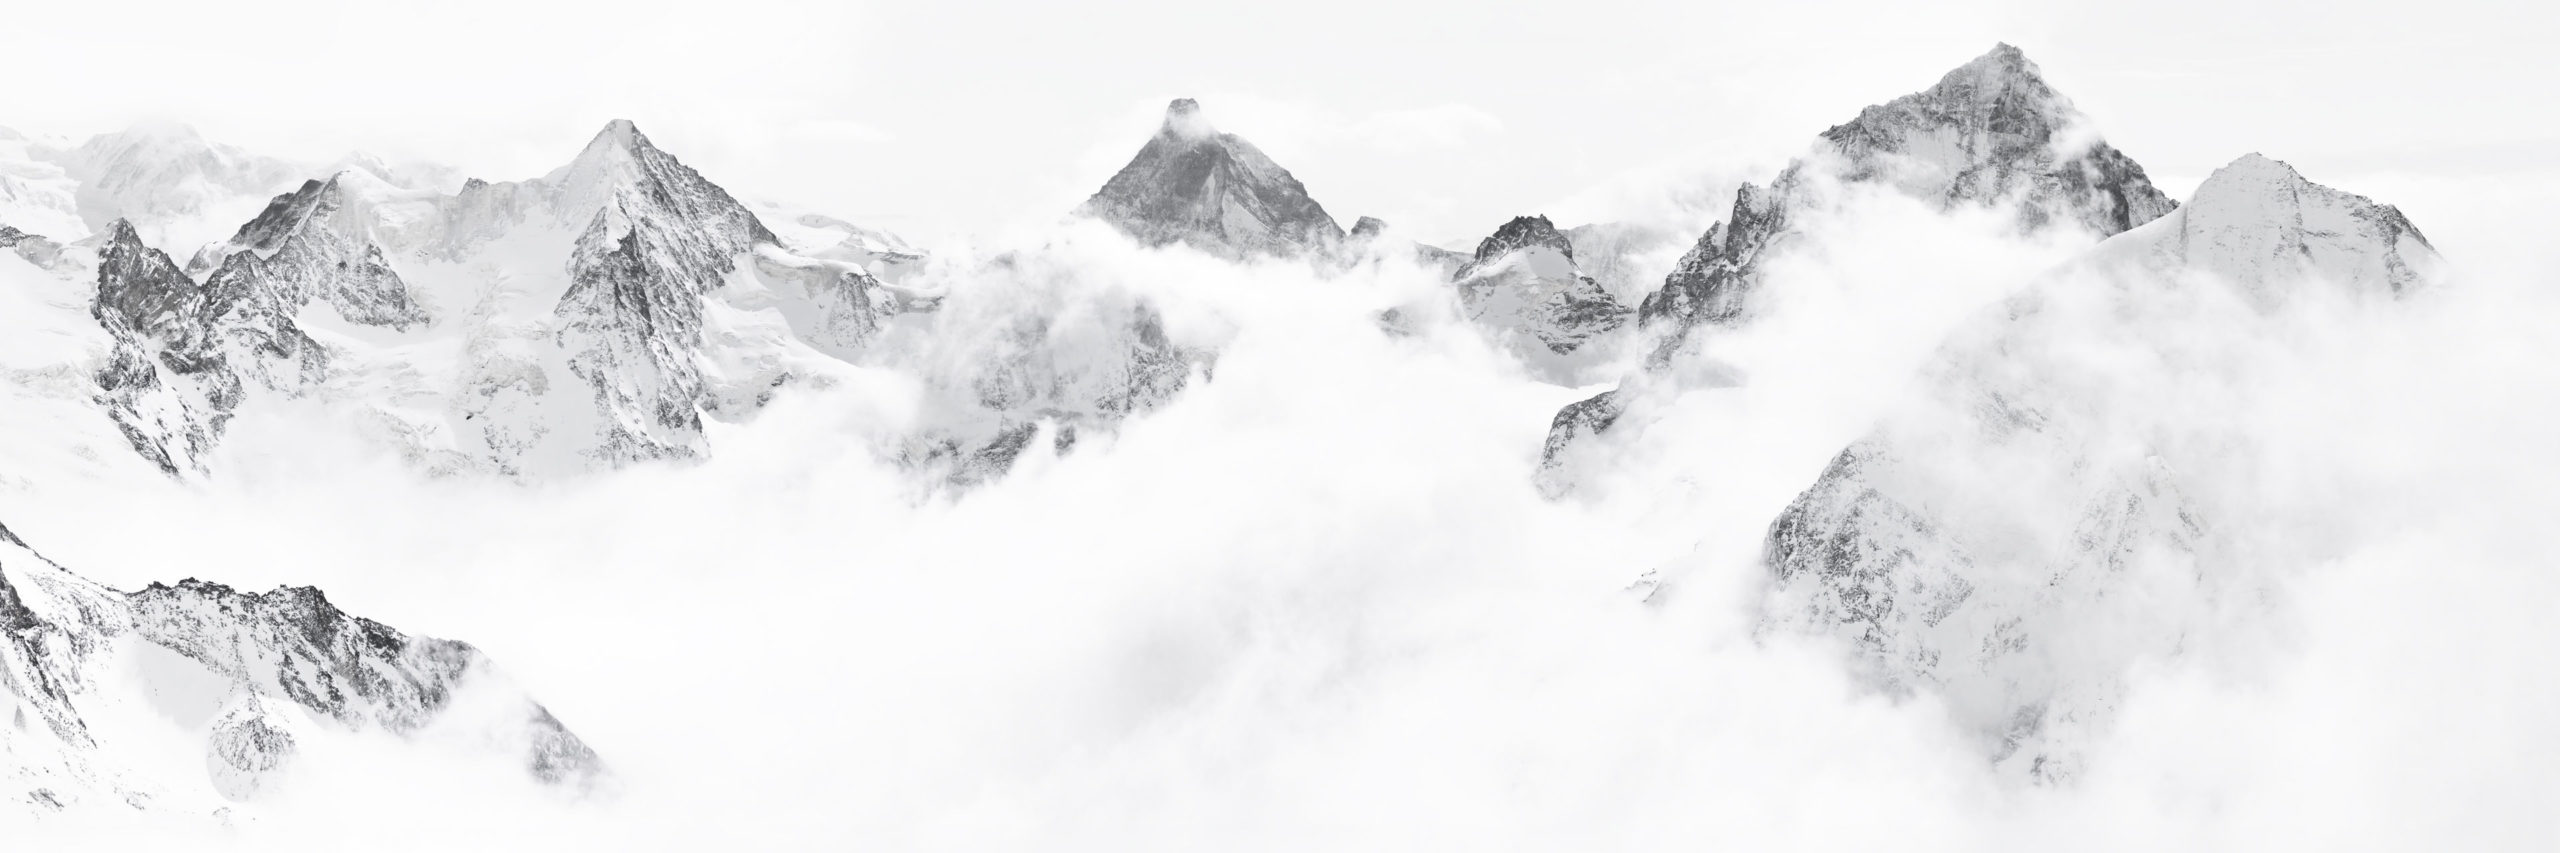 Kaiserkrone von Zinal - Bergfoto im Winter - Gerahmtes Foto eines Bergpanoramas